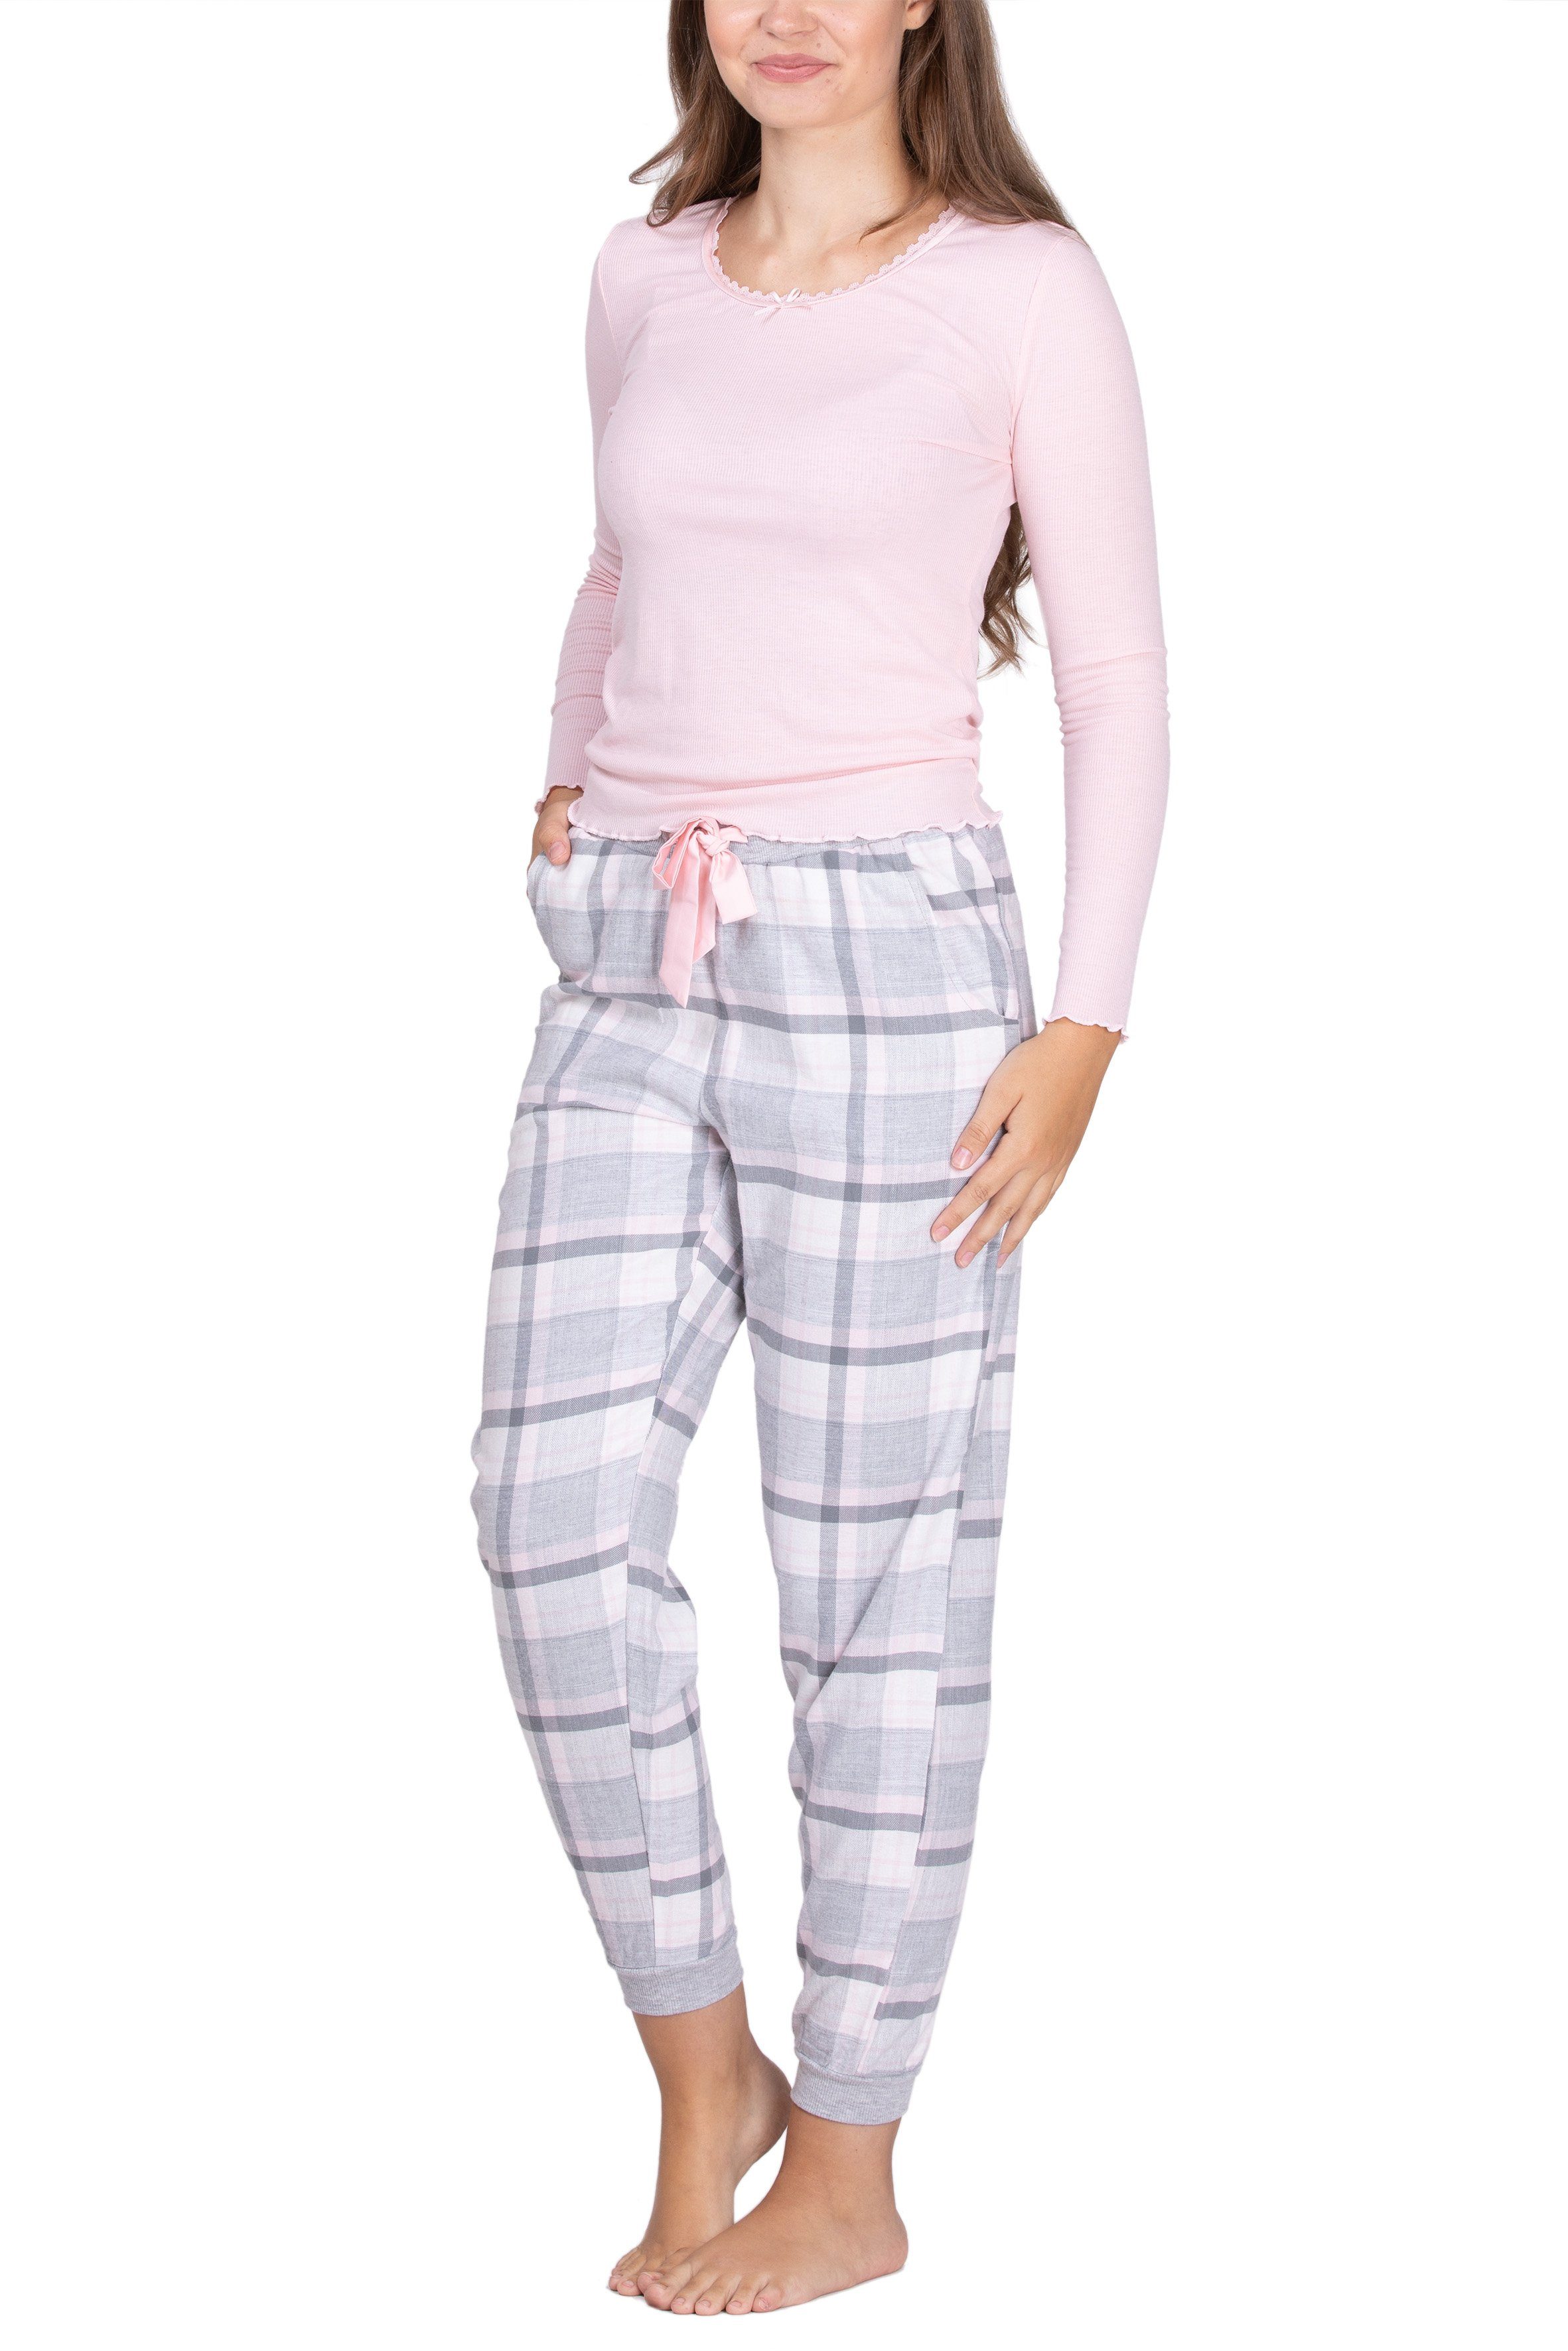 maluuna Pyjama Damen Schlafanzug mit Flanellhose und Bündchen rosa